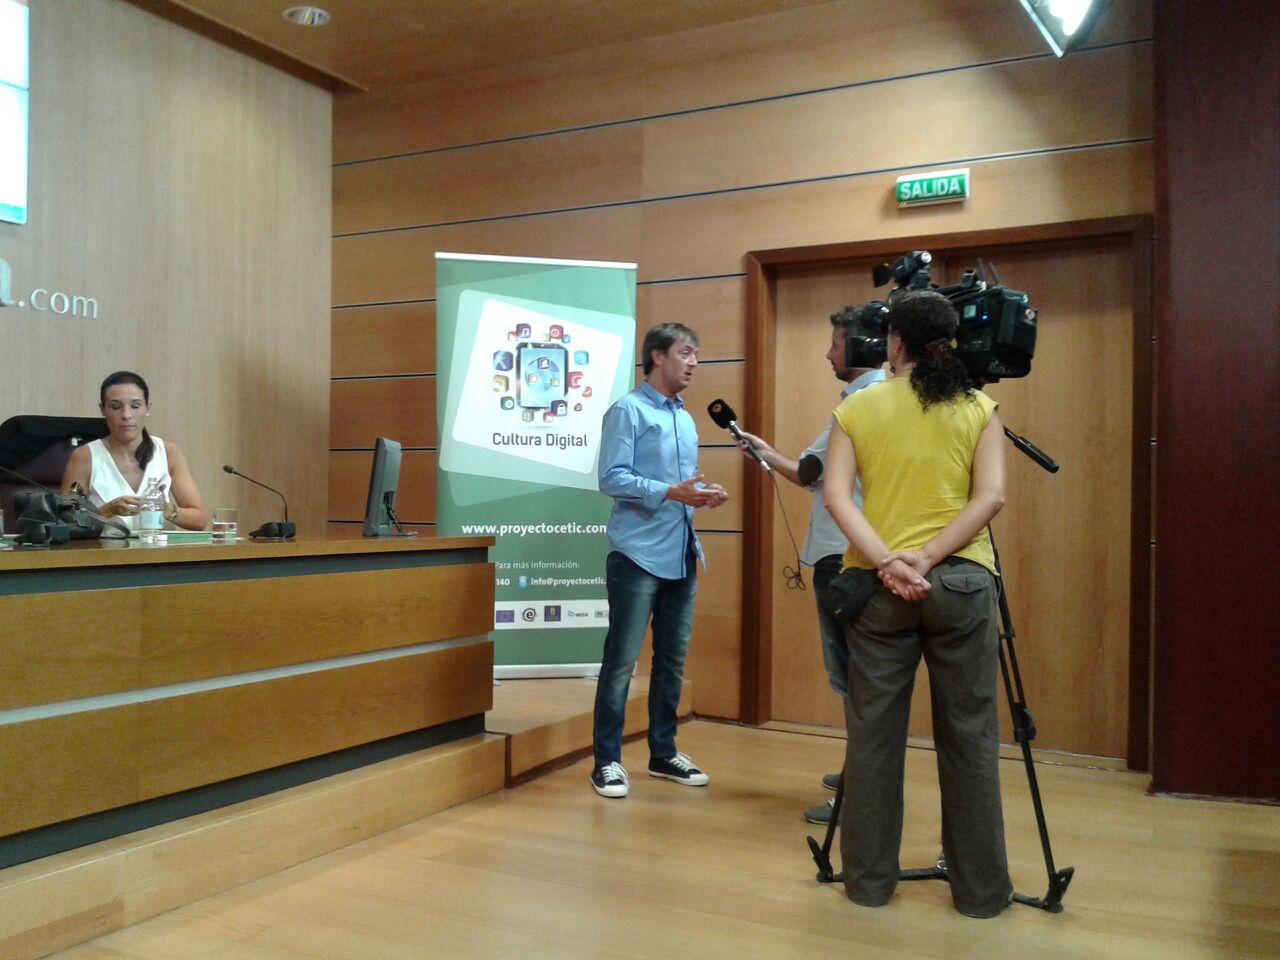 Jorge Flores entrevistado por reporteros de Antena 3 momentos antes del inicio de la jornada